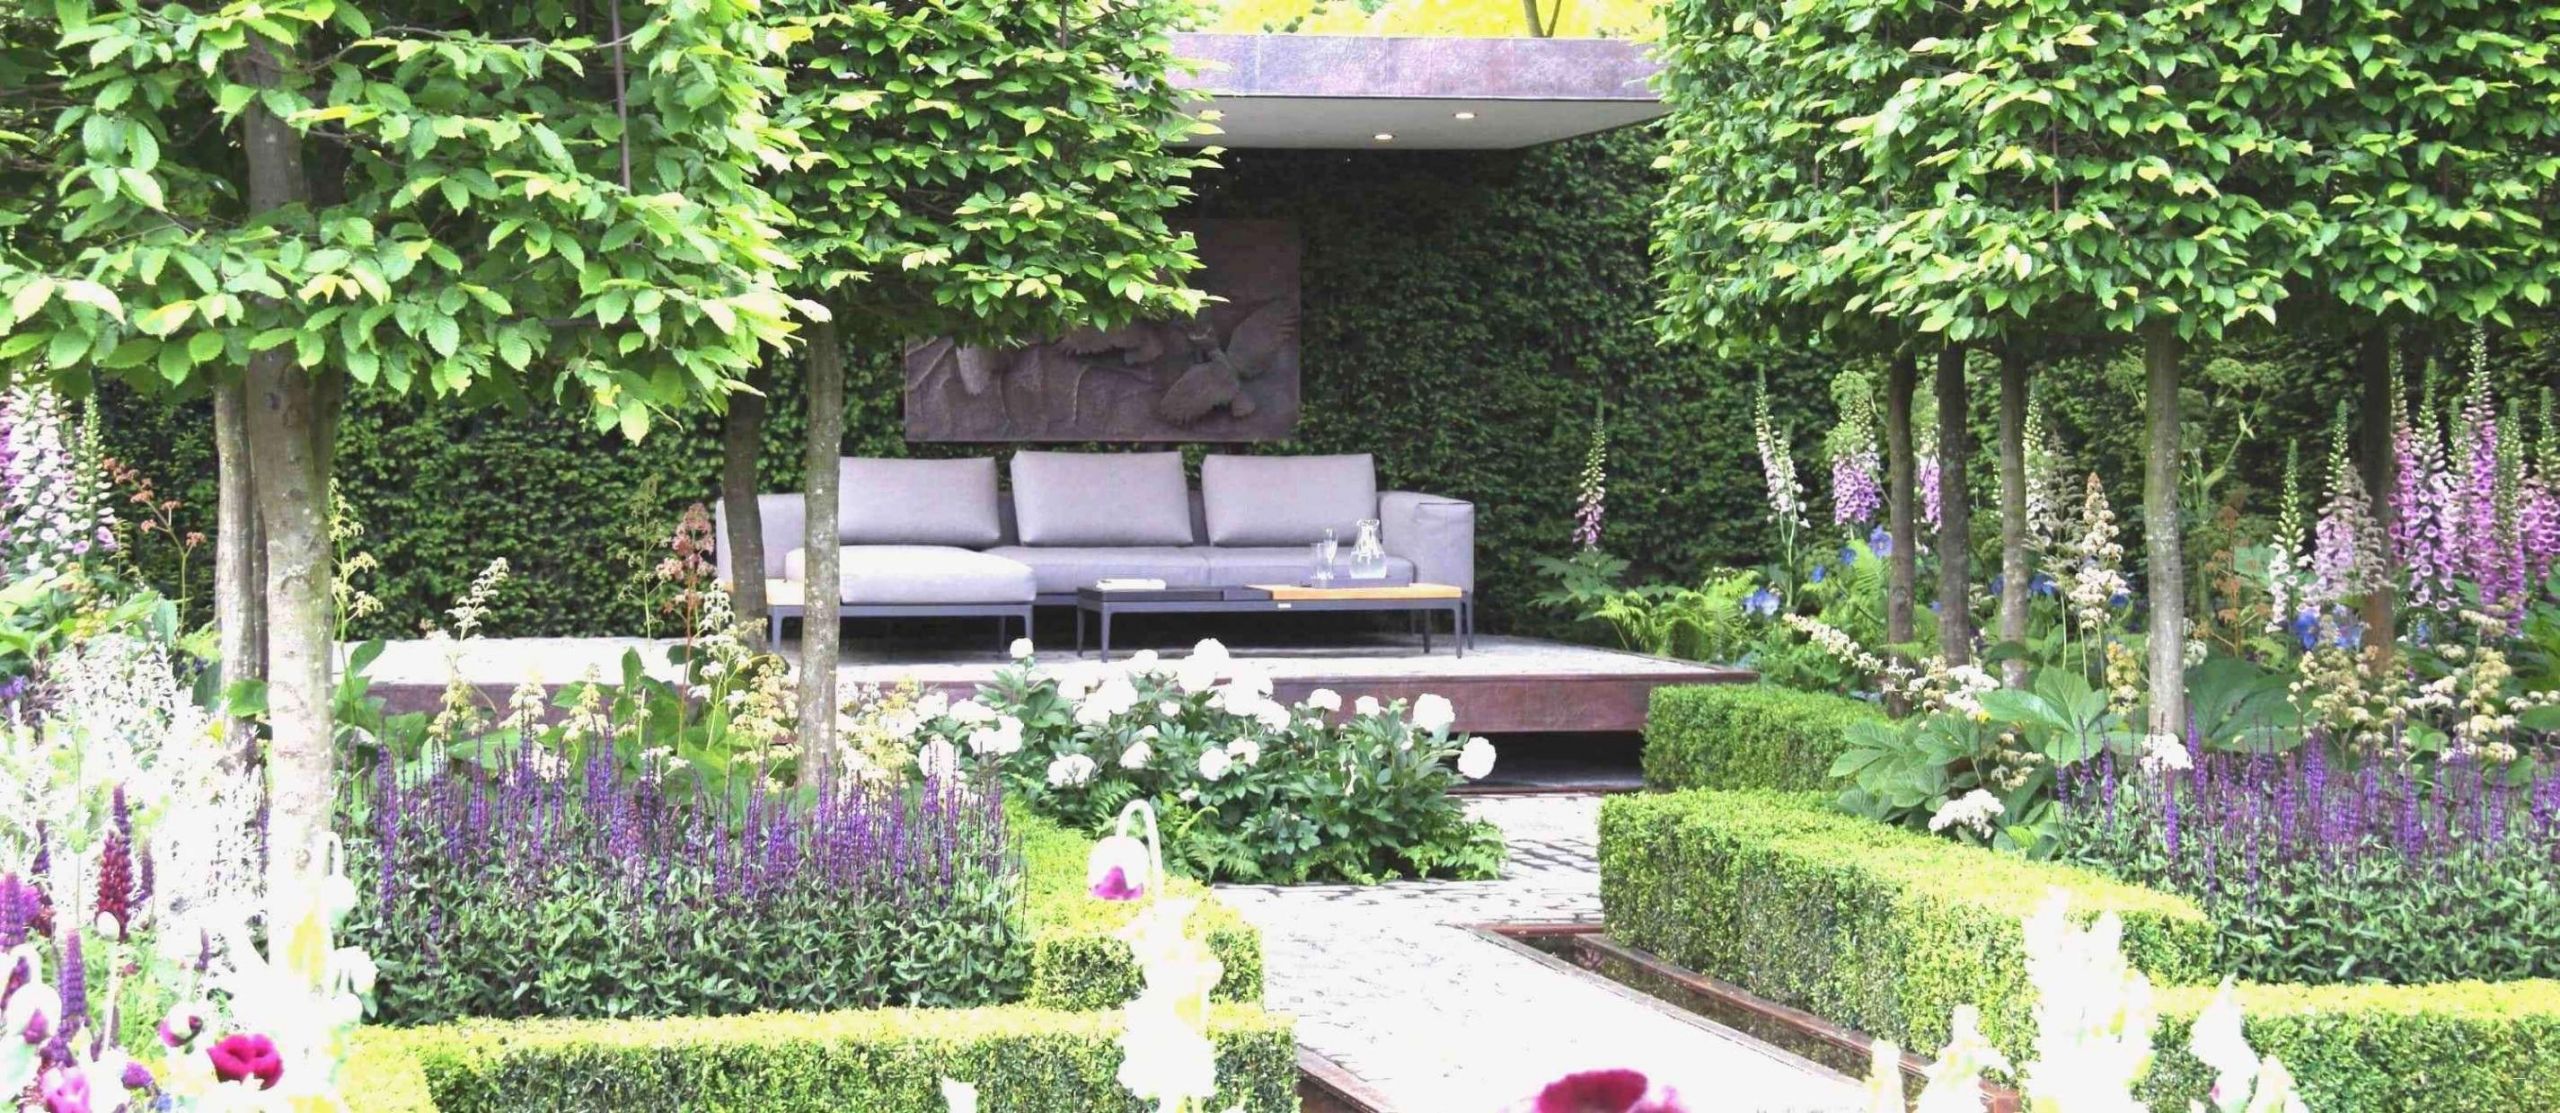 Kleine Gärten Neu Gestalten Elegant 40 Elegant Japanische Gärten Selbst Gestalten Das Beste Von